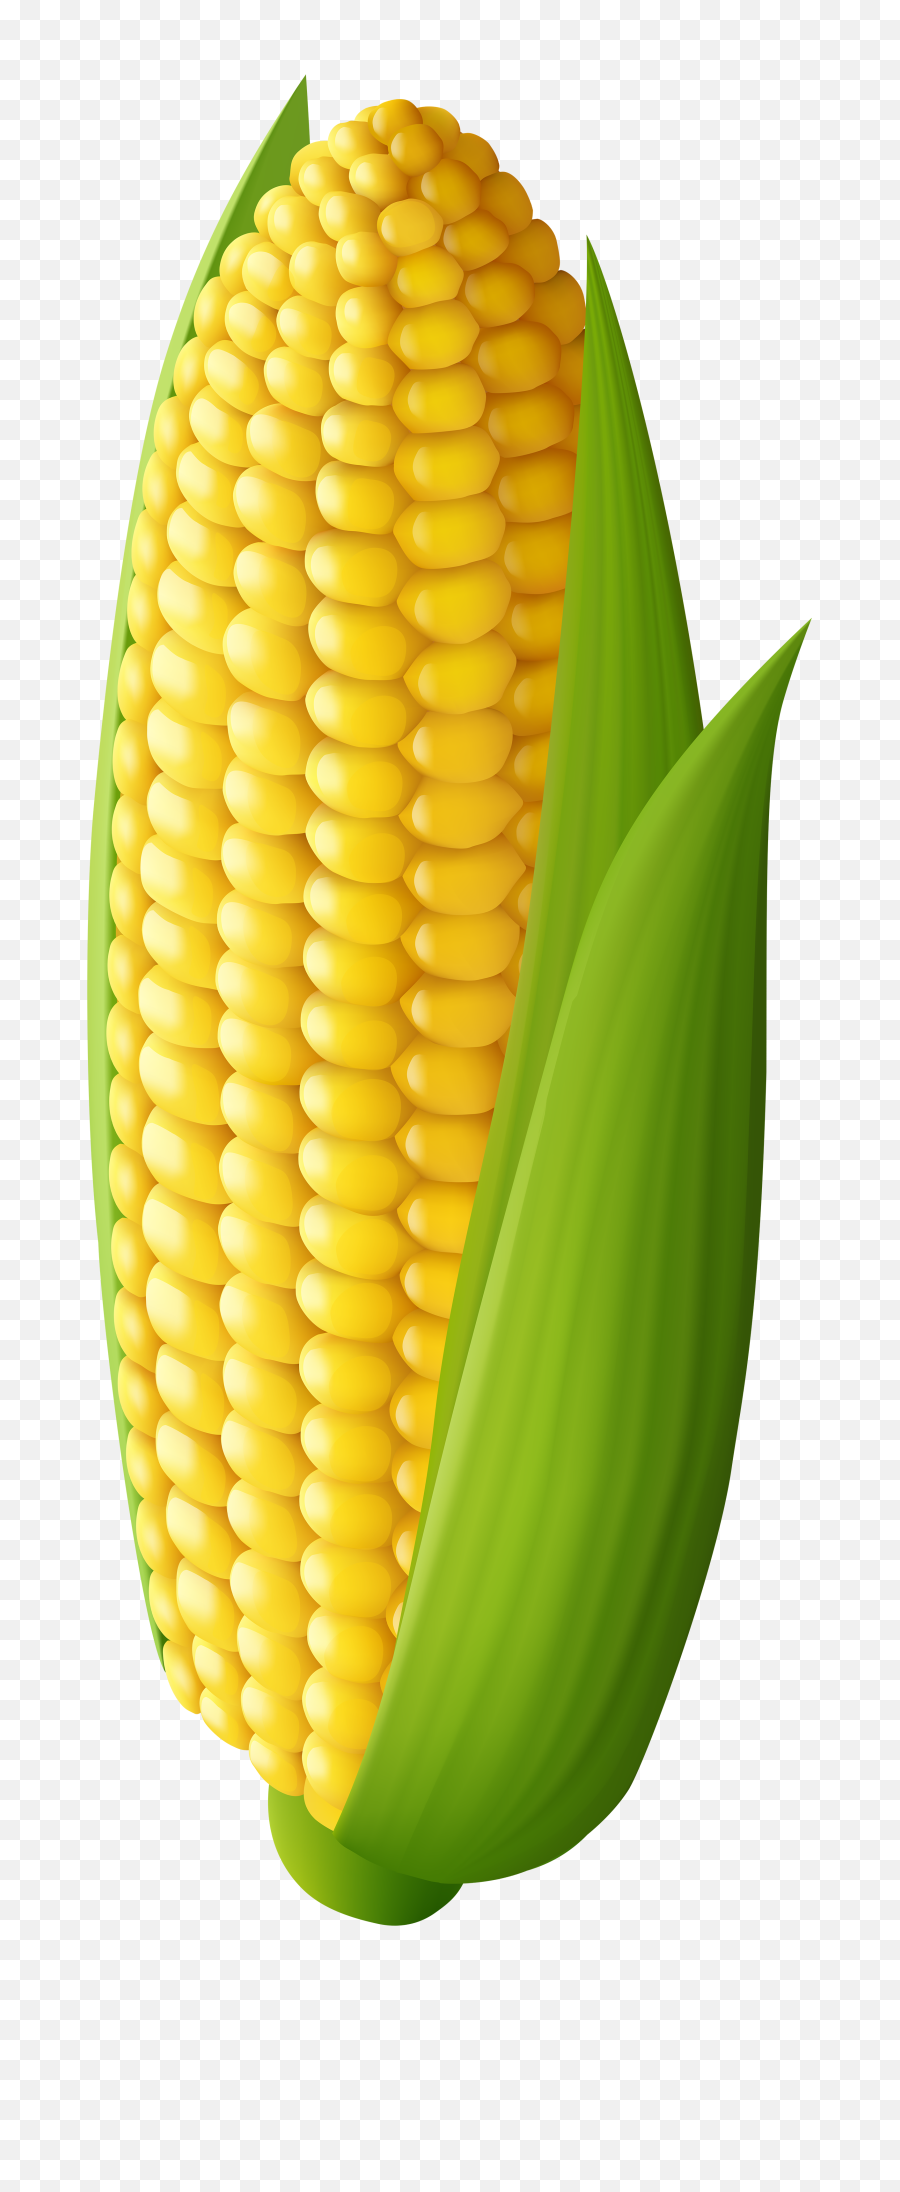 Free Corn - Corn Clipart Transparent,Corn Cob Png